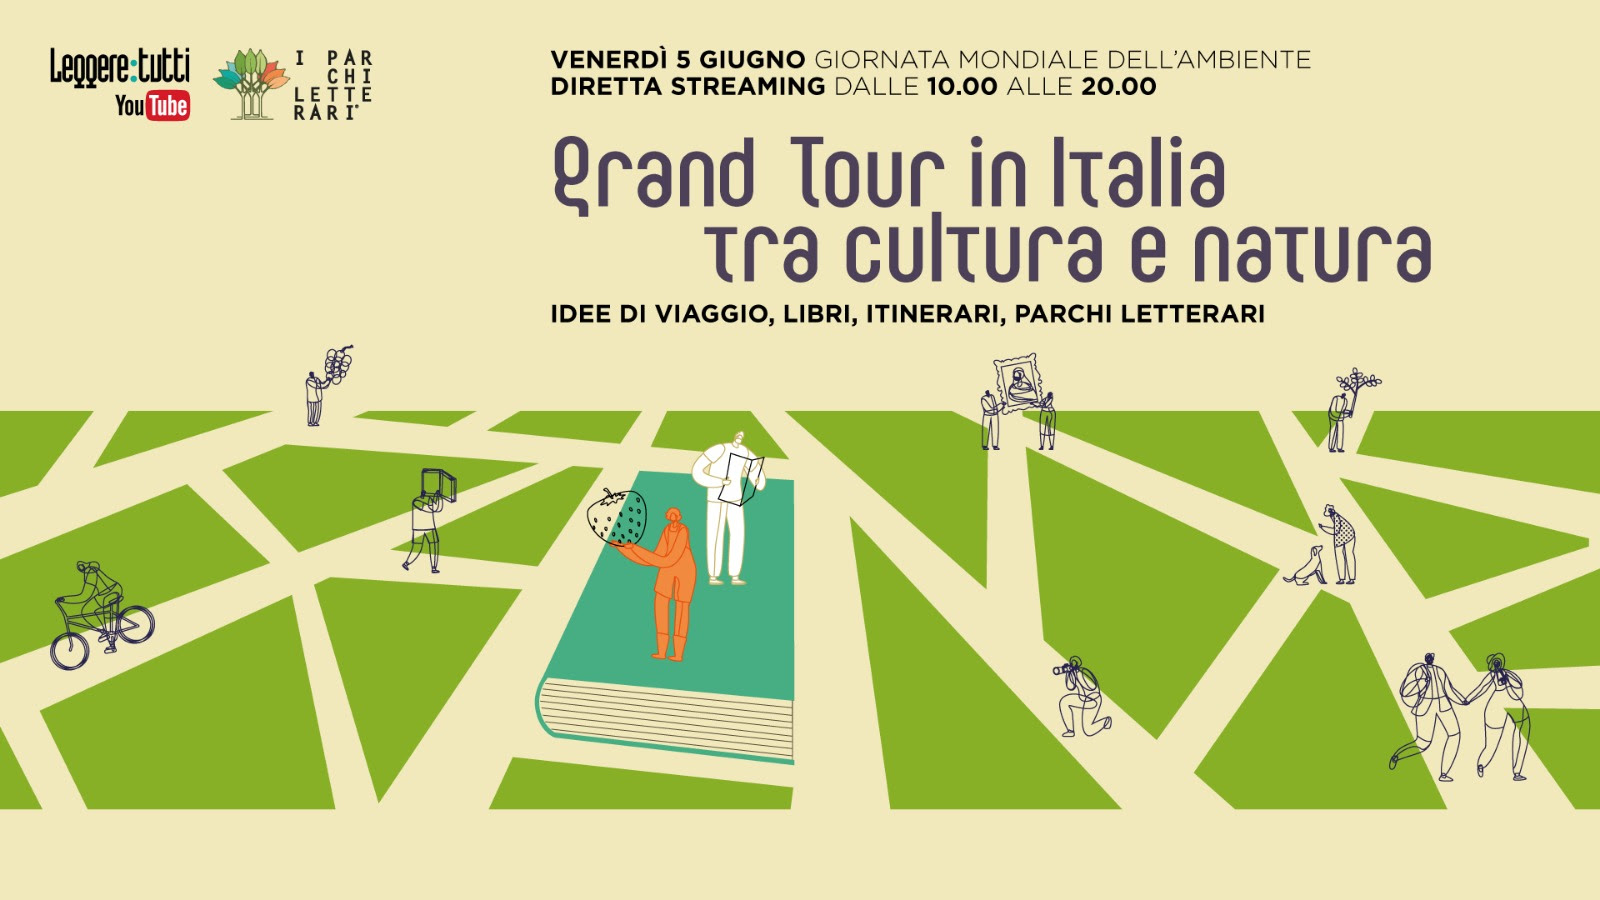 leggere:tutti la locandina dell'evento Grand tour in Italia tra cultura e natura